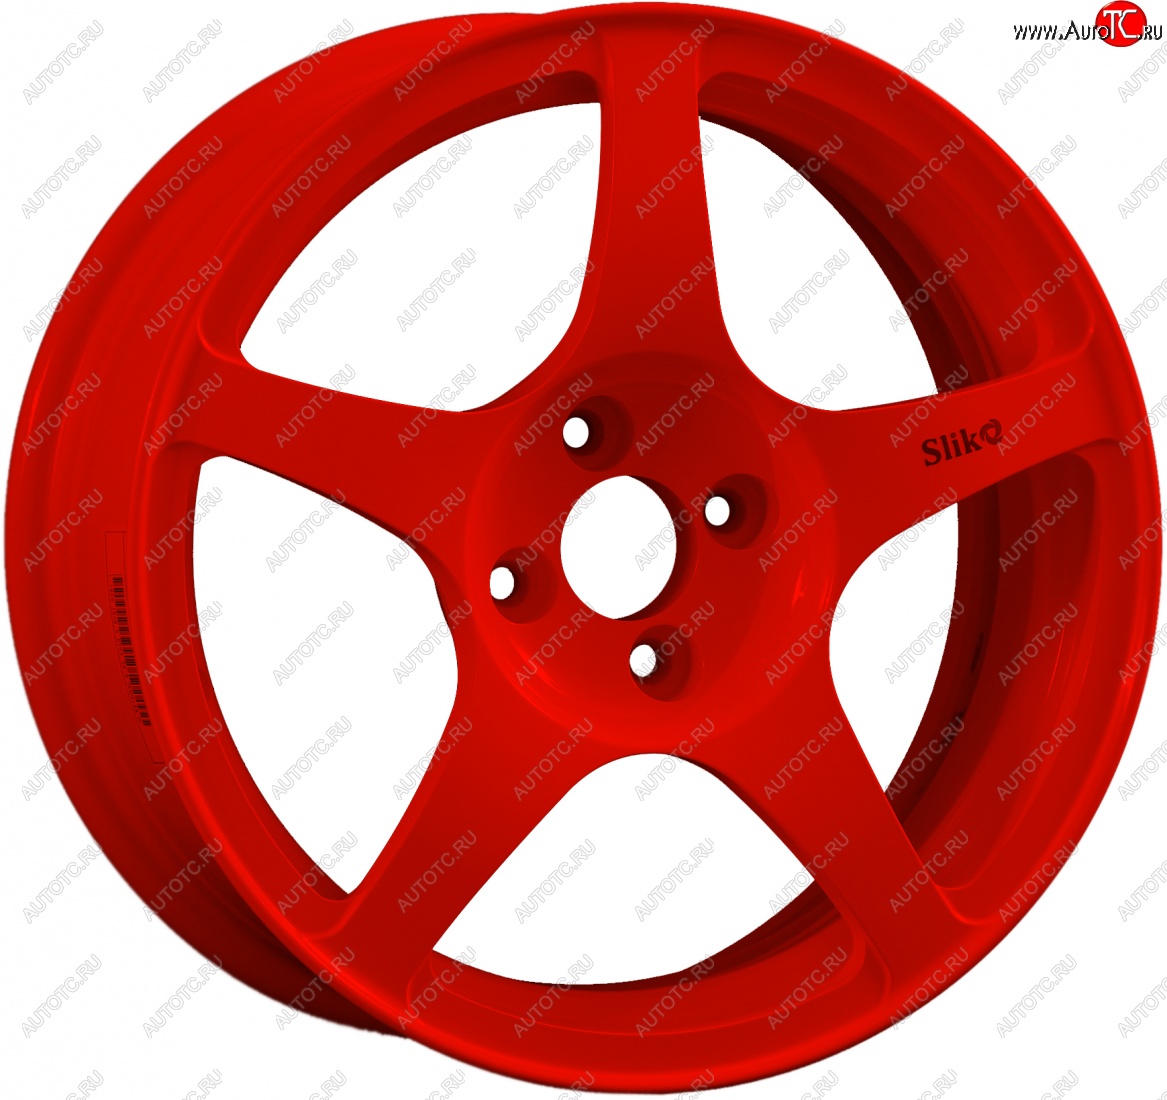 10 349 р. Кованый диск Slik classik R16x6.5 Красный (RED) 6.5x16 Toyota Echo XP10 седан рестайлинг (2002-2006) 4x100.0xDIA54.1xET45.0 (Цвет: RED)